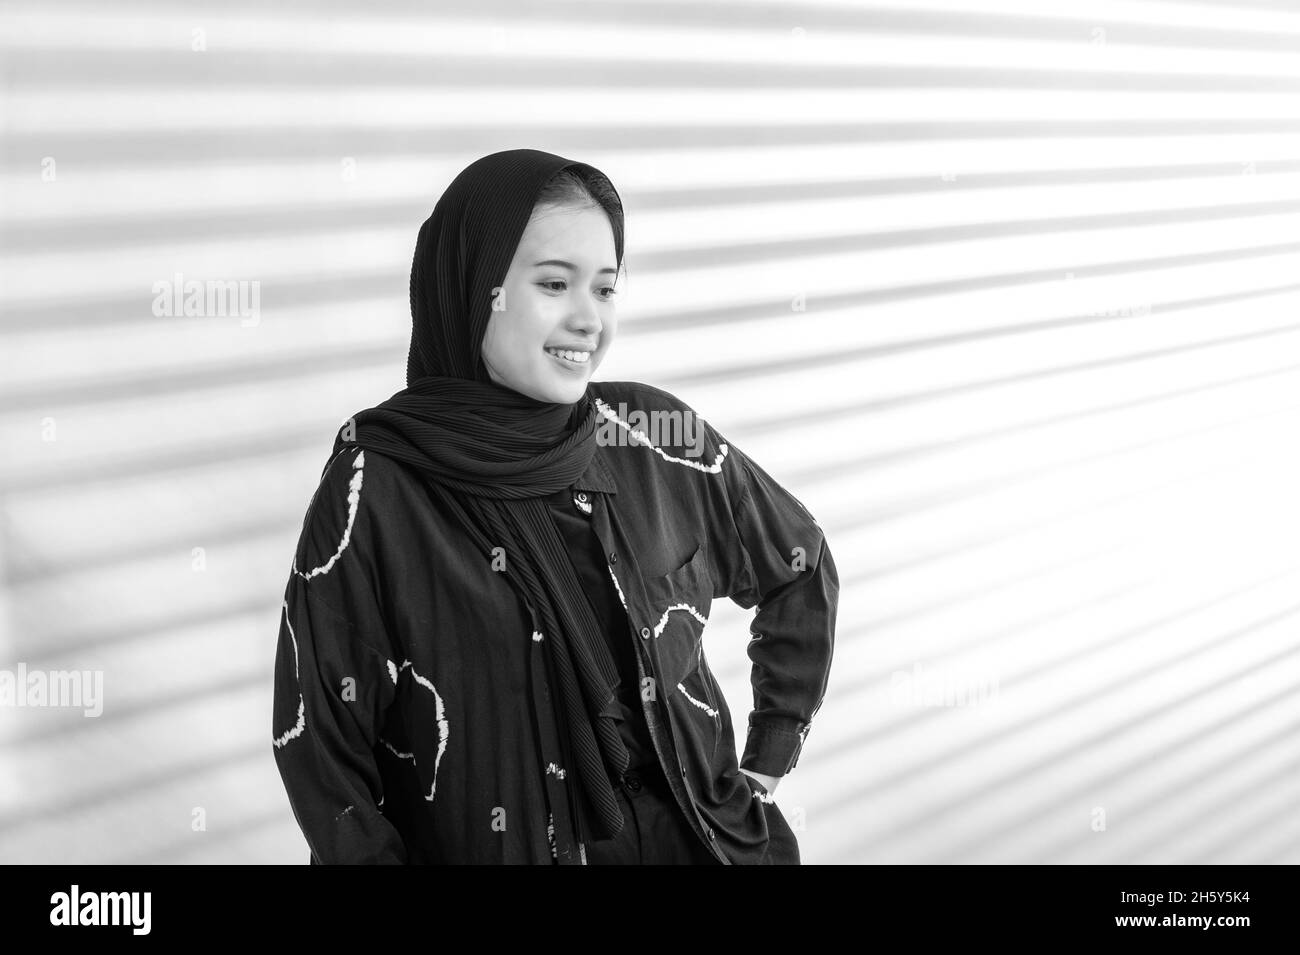 Indonesische weibliche Teenager-Muslimin mit Hijab im schwarz-weißen Porträt Stockfoto